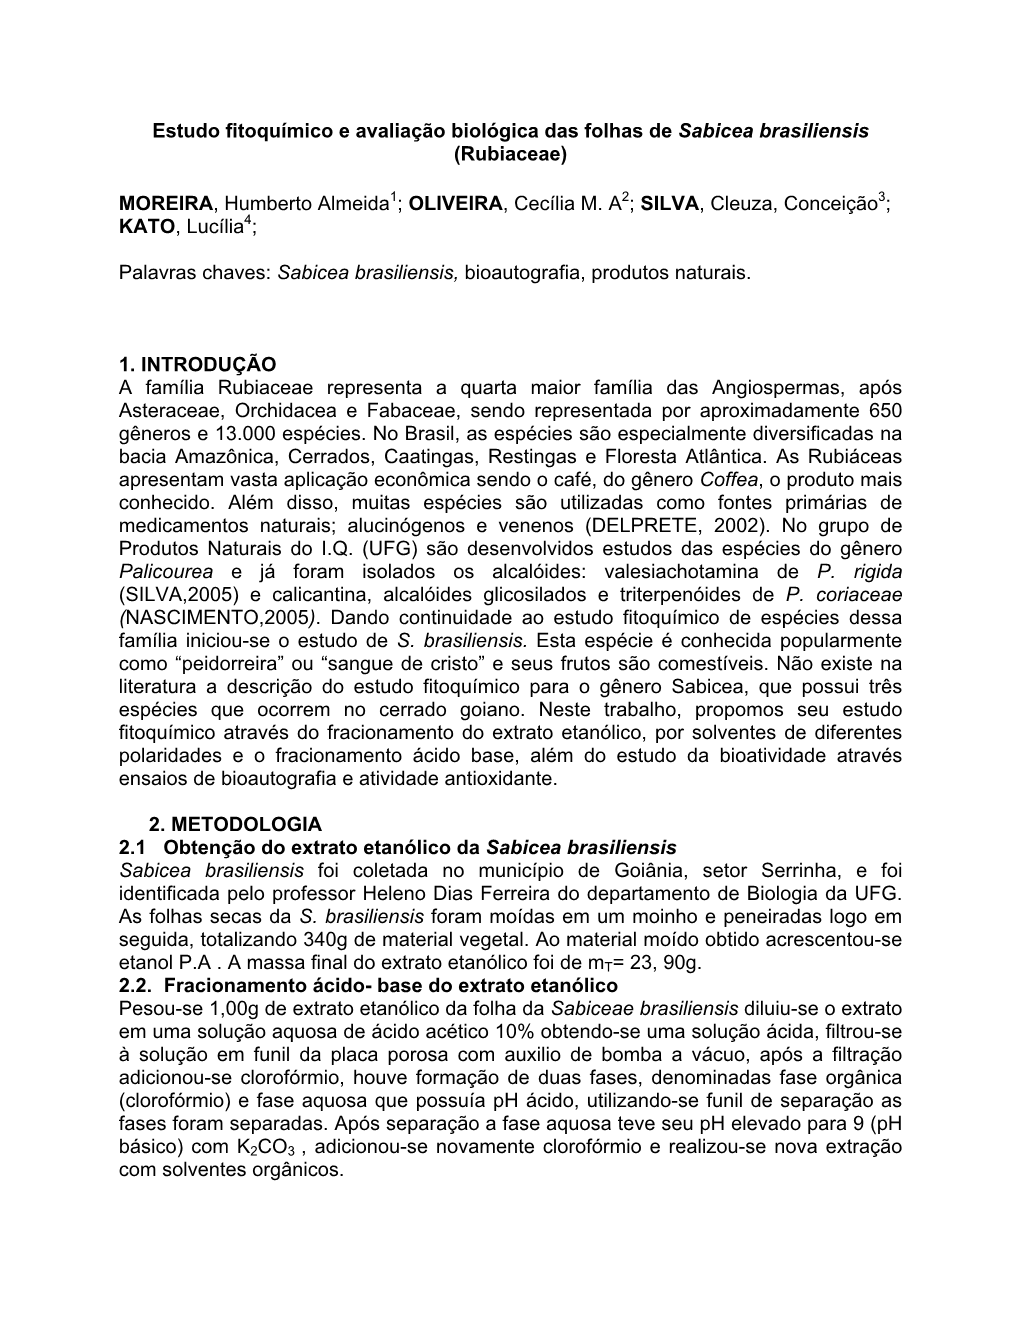 Estudo Fitoquímico E Avaliação Biológica Das Folhas De Sabicea Brasiliensis (Rubiaceae)